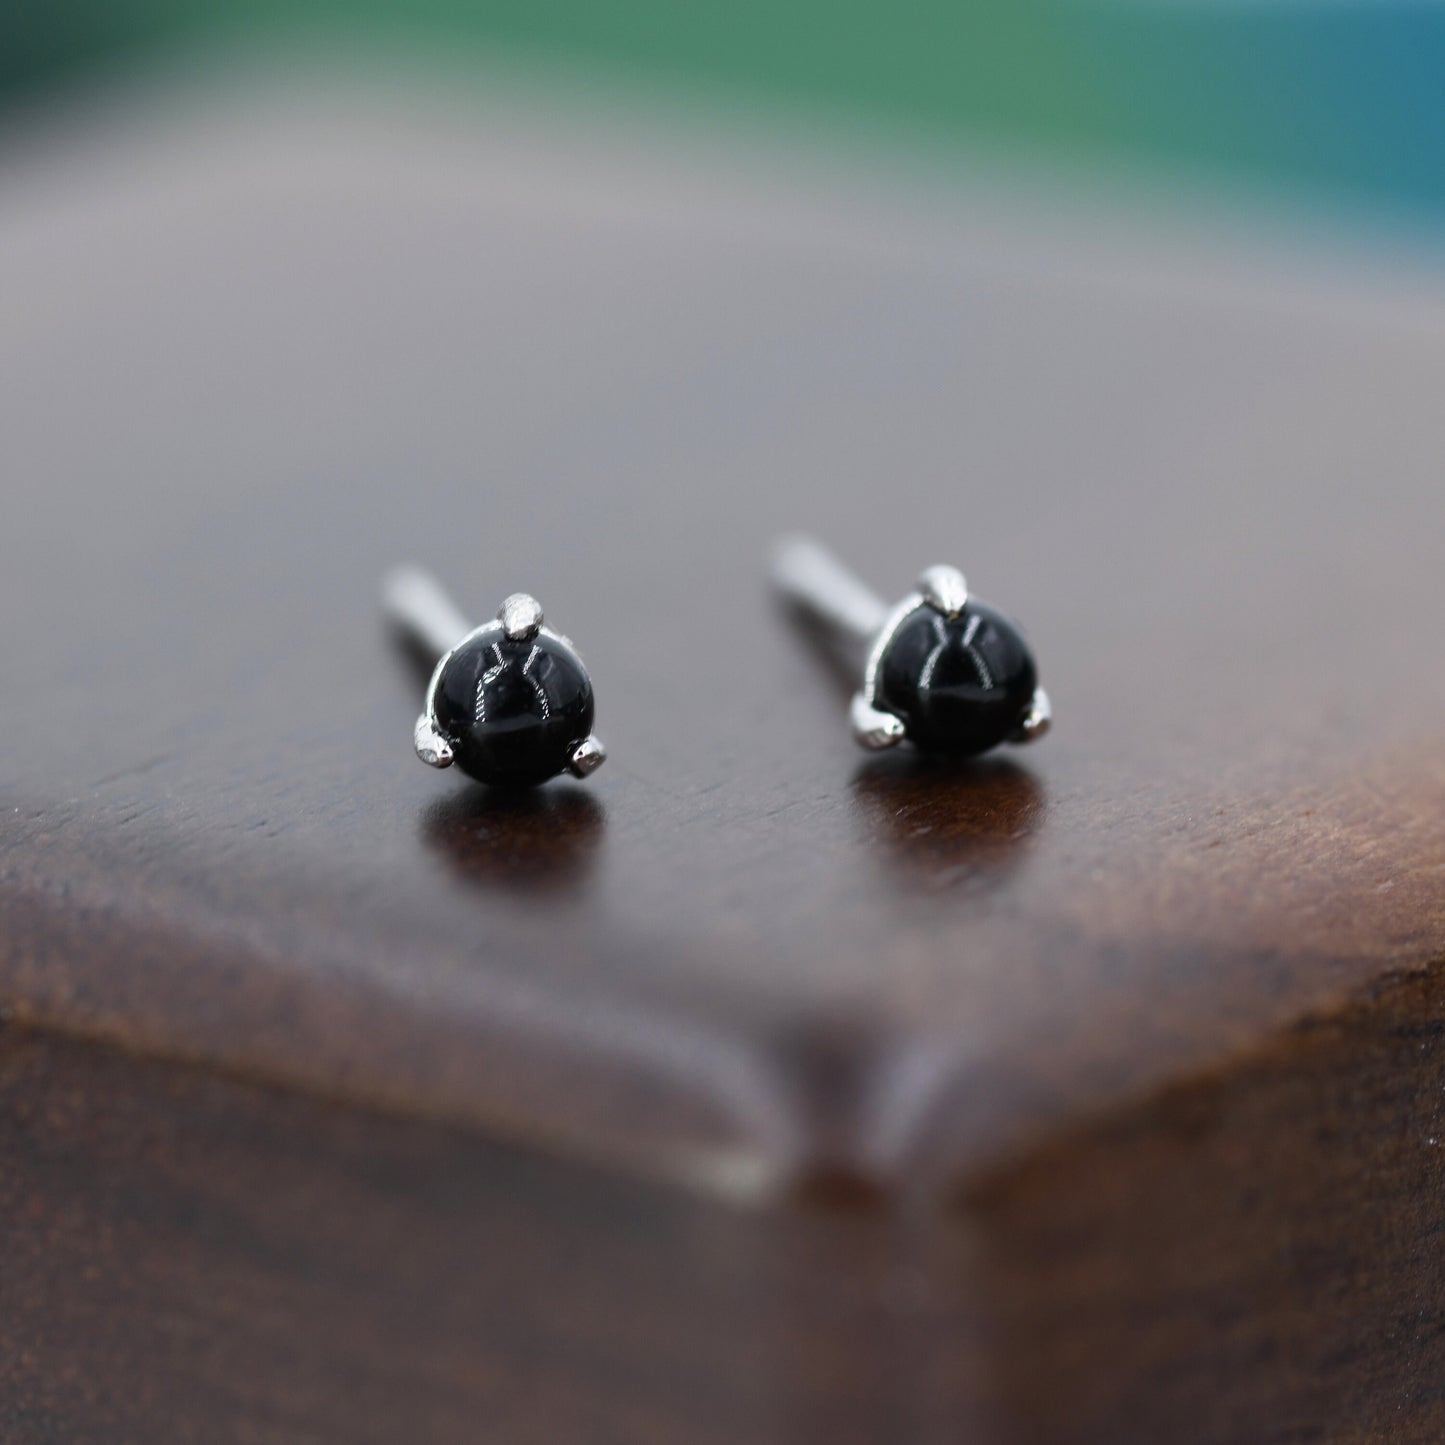 Natural Black Onyx Stud Earrings in Sterling Silver, Semi-Precious Gemstone Earrings, 3mm and 3 prong Genuine Black Onyx Earrings